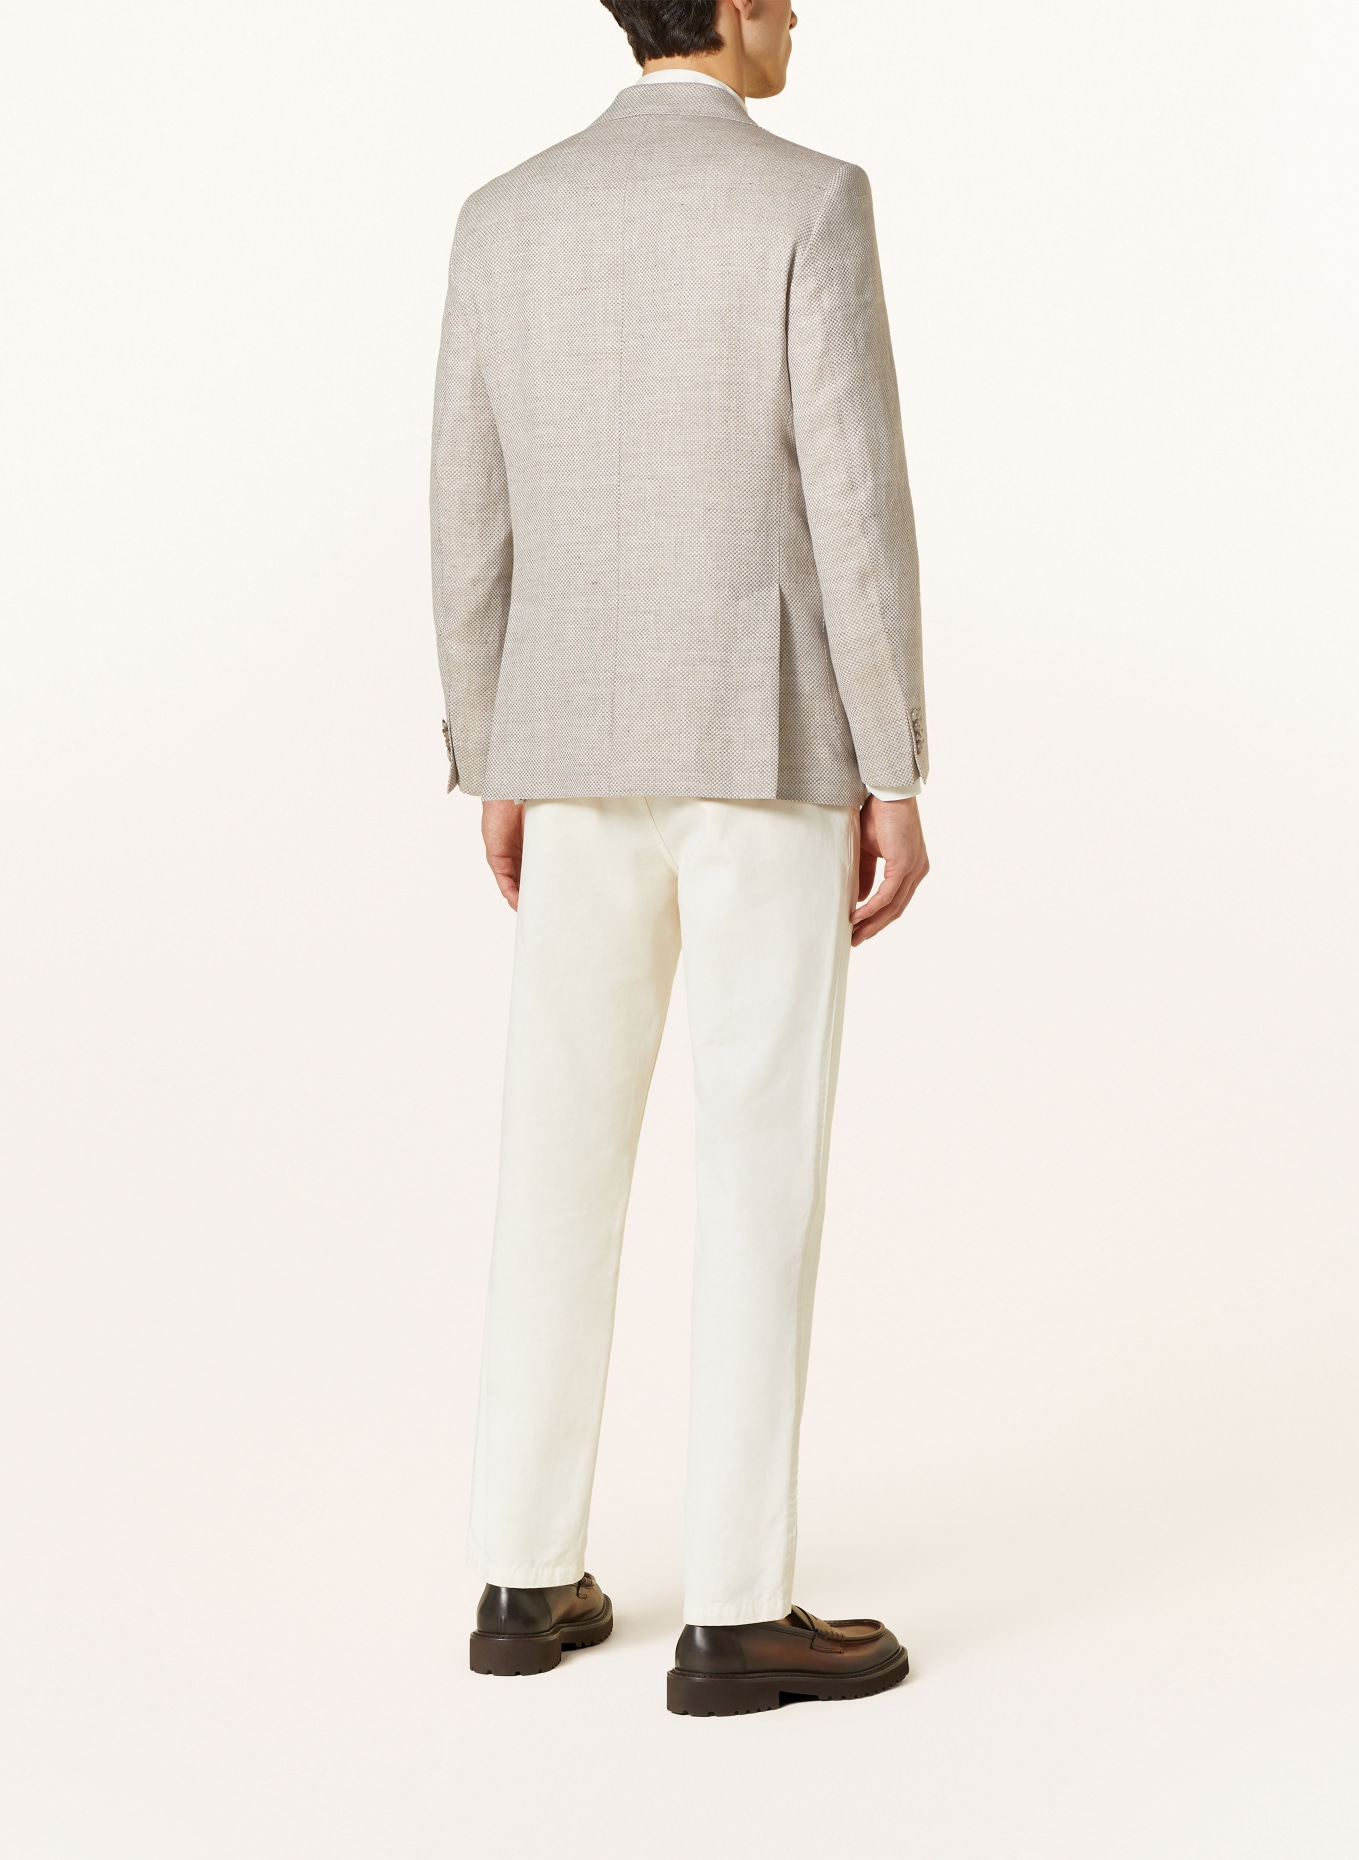 EDUARD DRESSLER Tailored jacket comfort fit with linen, Color: BEIGE (Image 3)